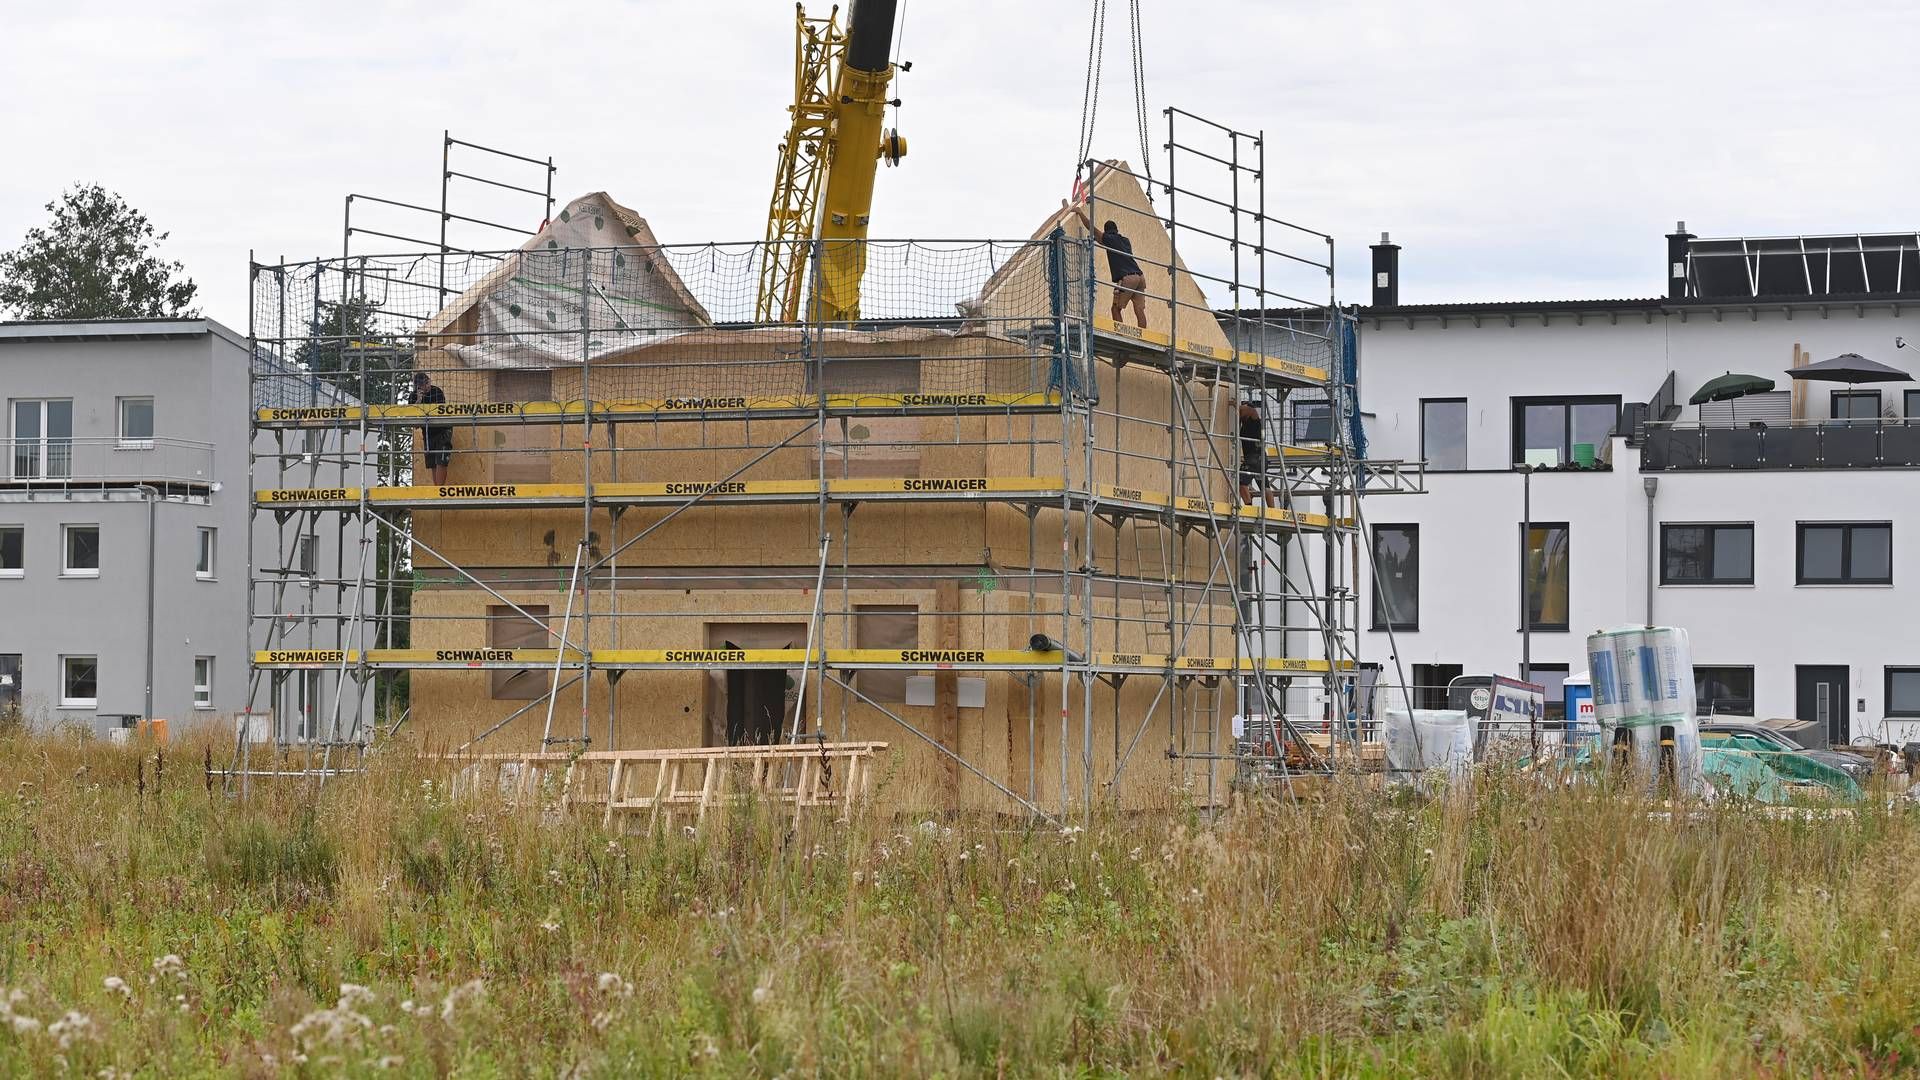 Immobilienpreise werden weiter steigen. | Foto: picture alliance / SvenSimon | Frank Hoermann/SVEN SIMON